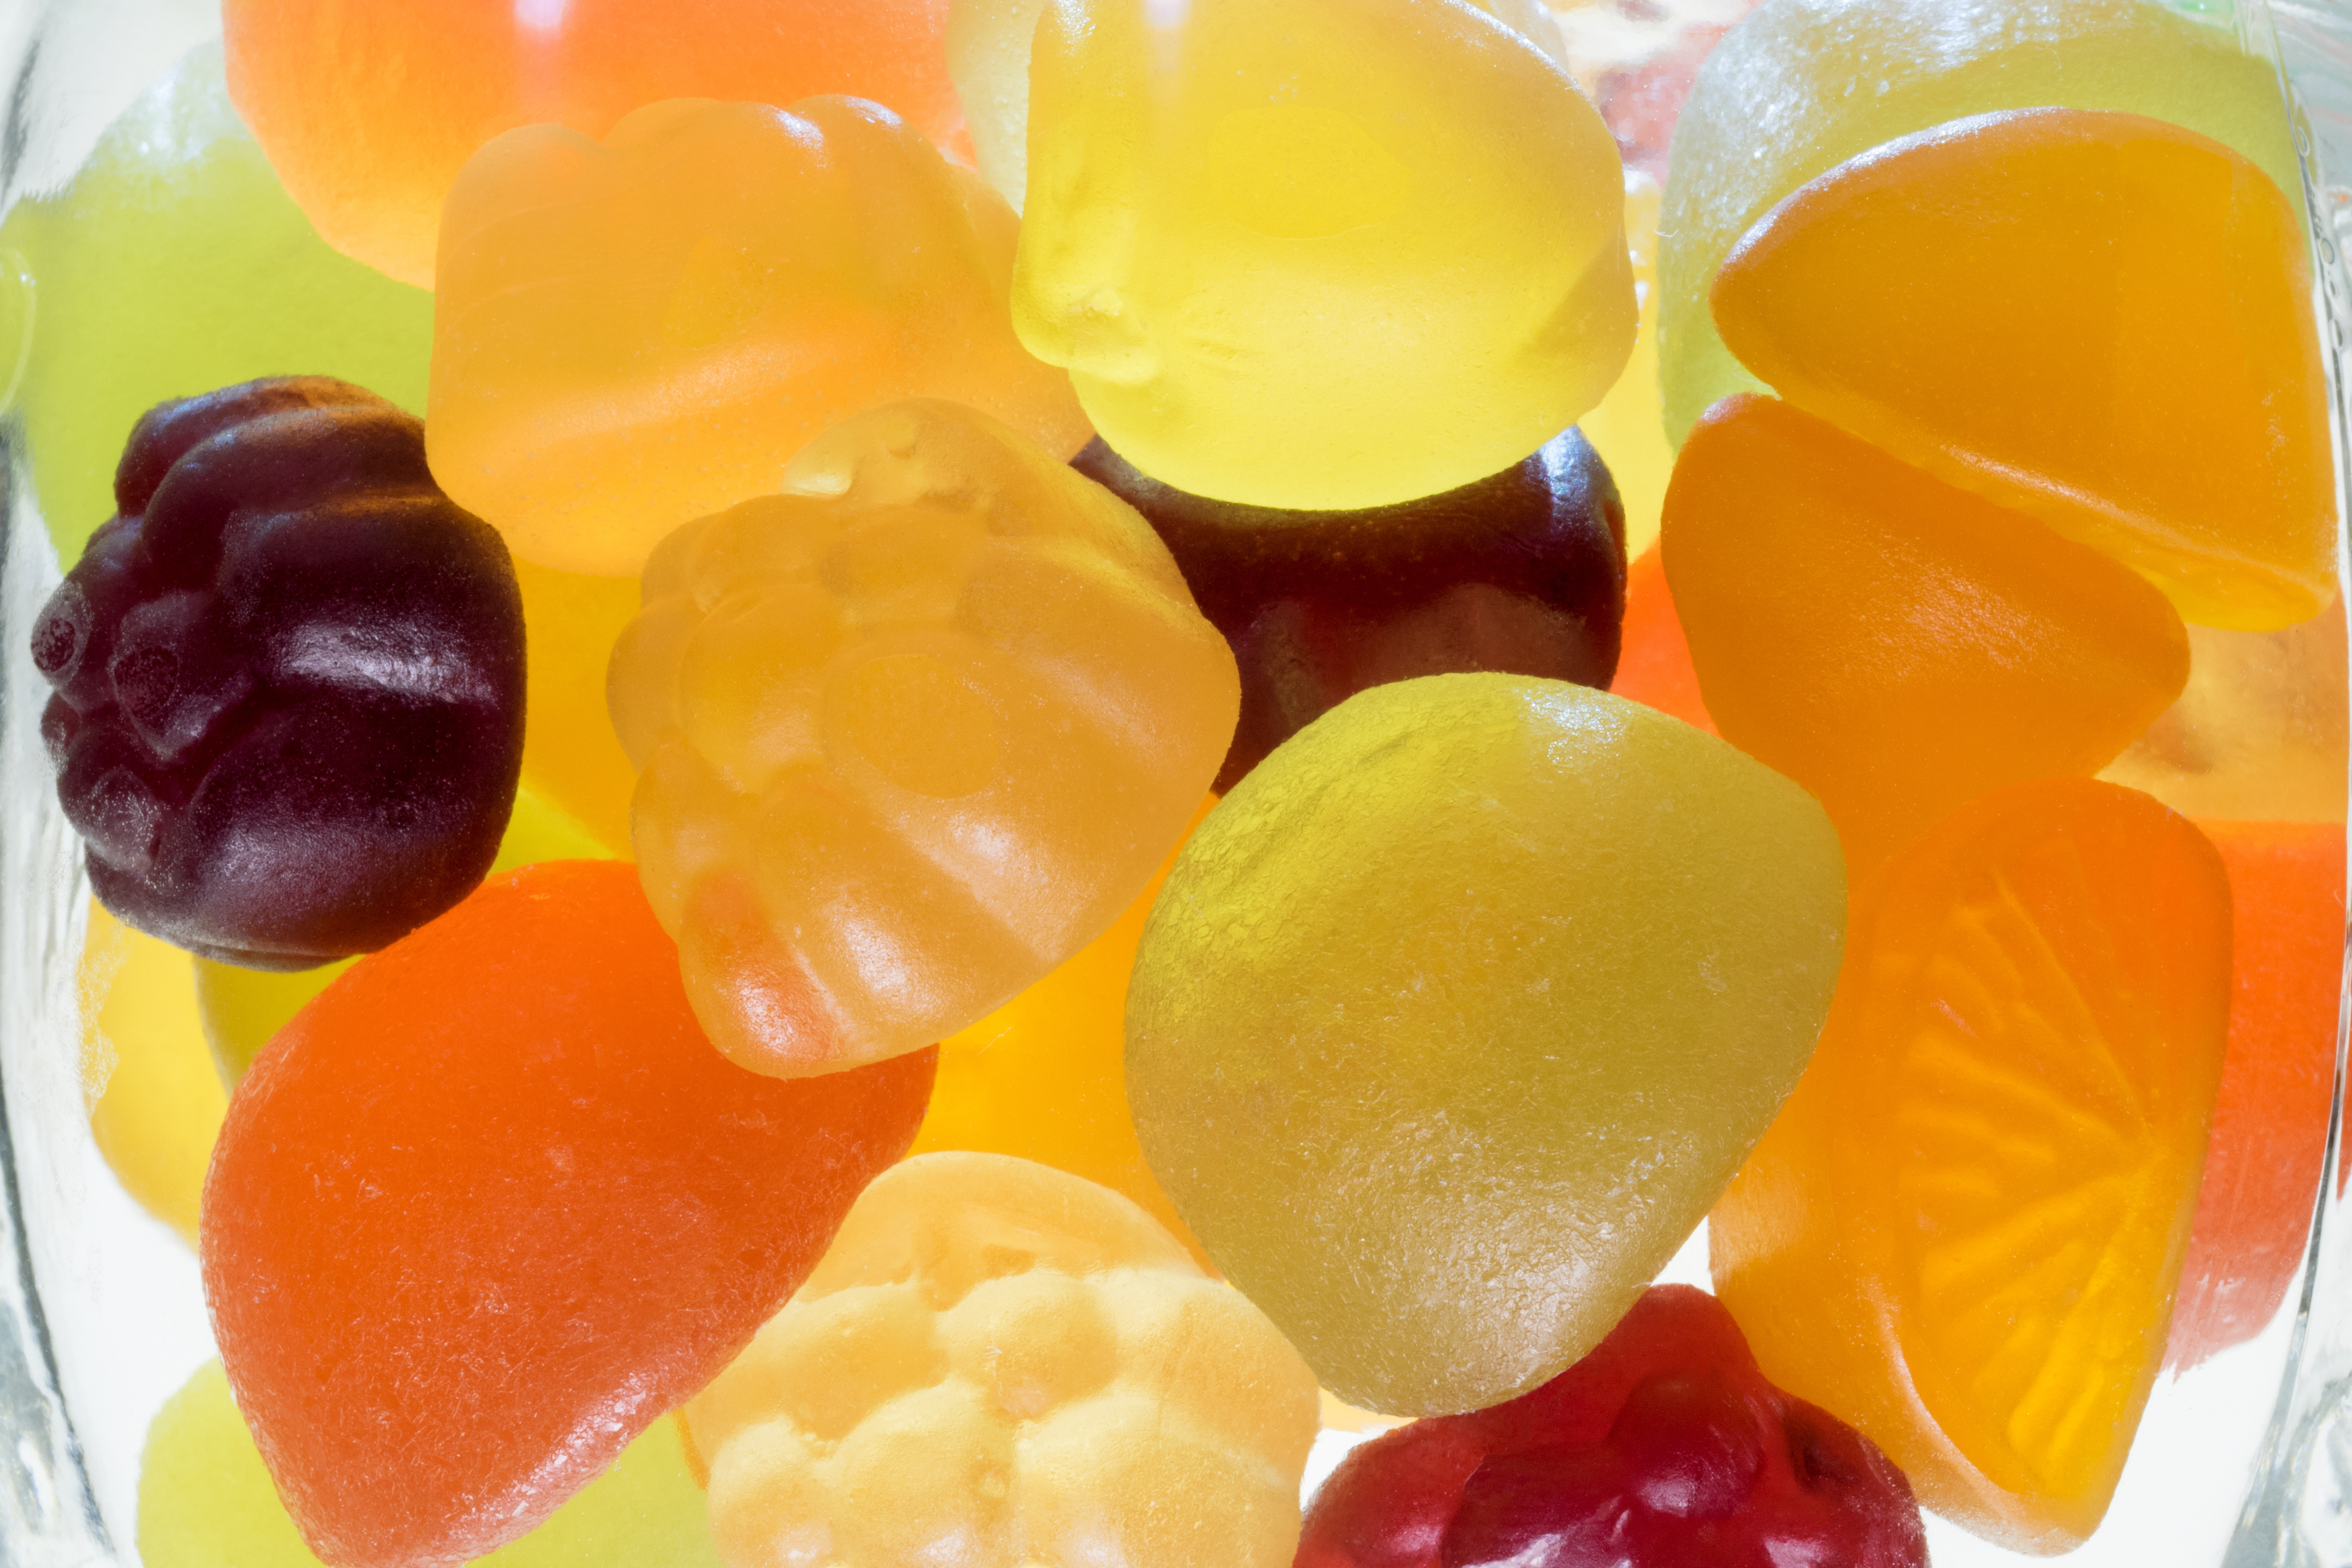 Fruit gummi candies